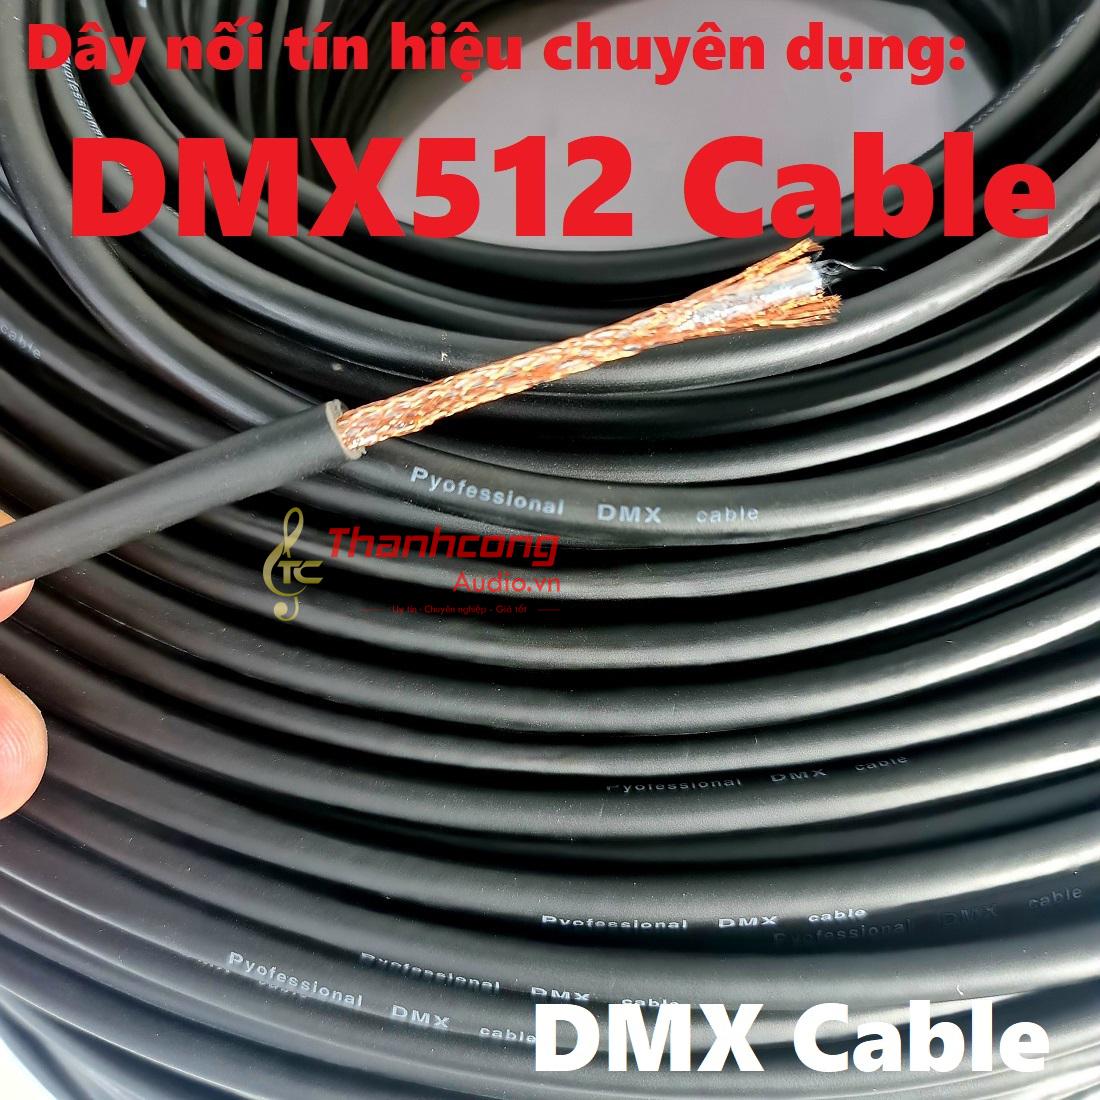 DMX 512 Cable: Dây nối tín hiệu chuyên dụng cho thiết bị ánh sáng sân khấu.